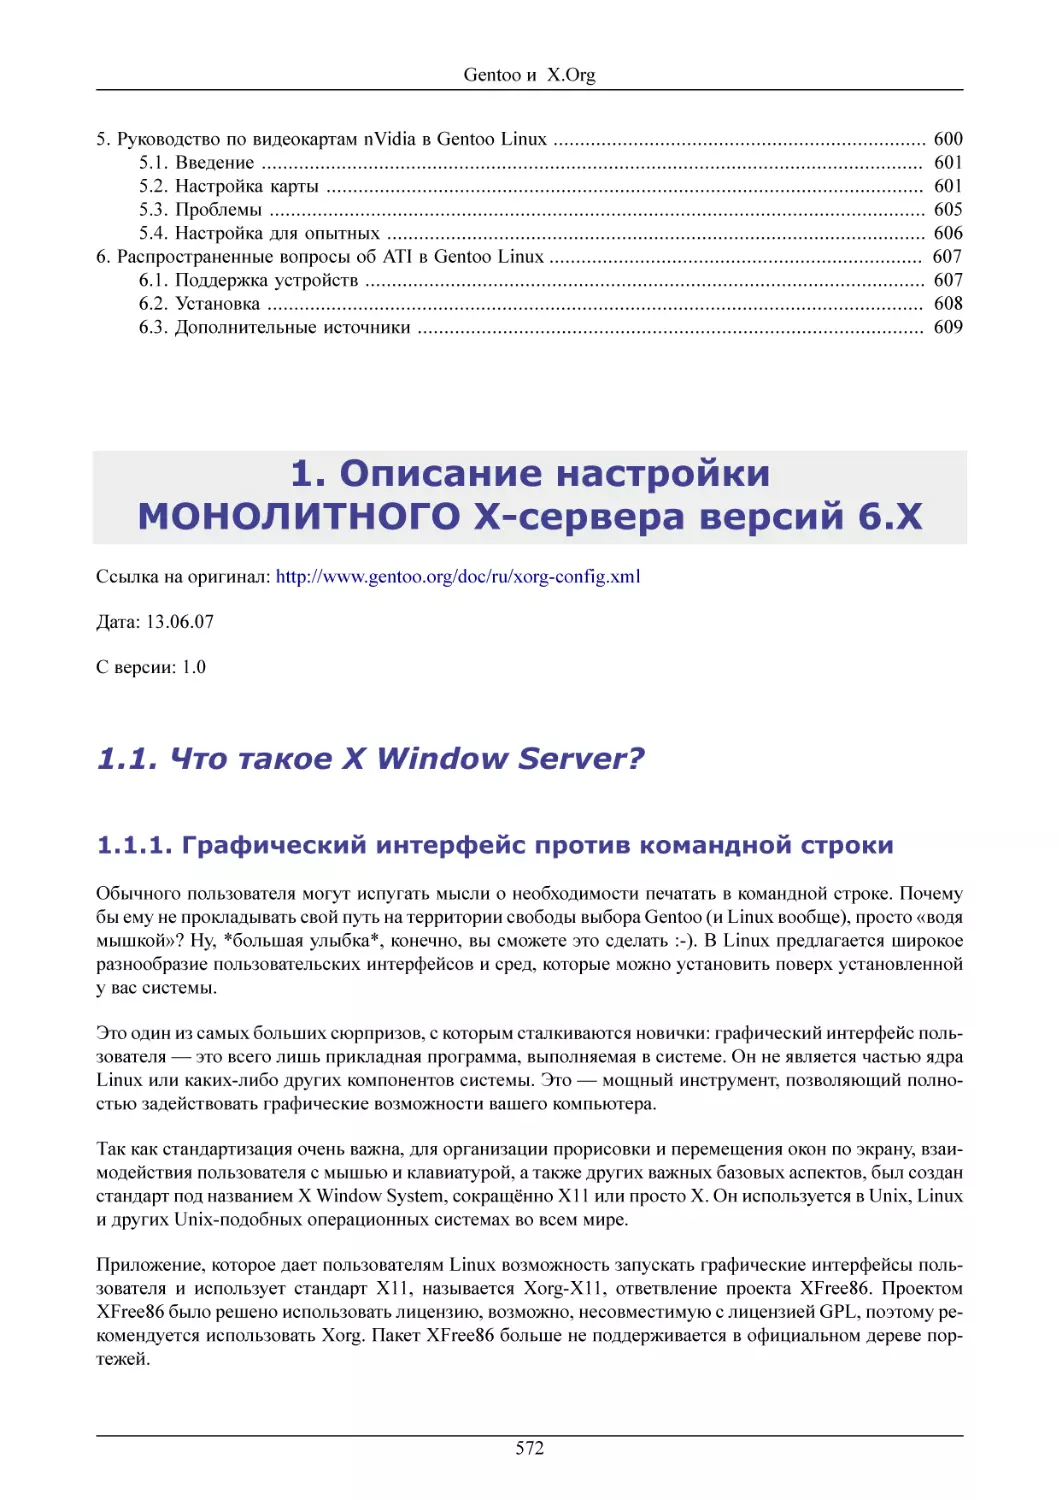 Описание настройки МОНОЛИТНОГО X-сервера версий 6.X
Что такое X Window Server?
Графический интерфейс против командной строки